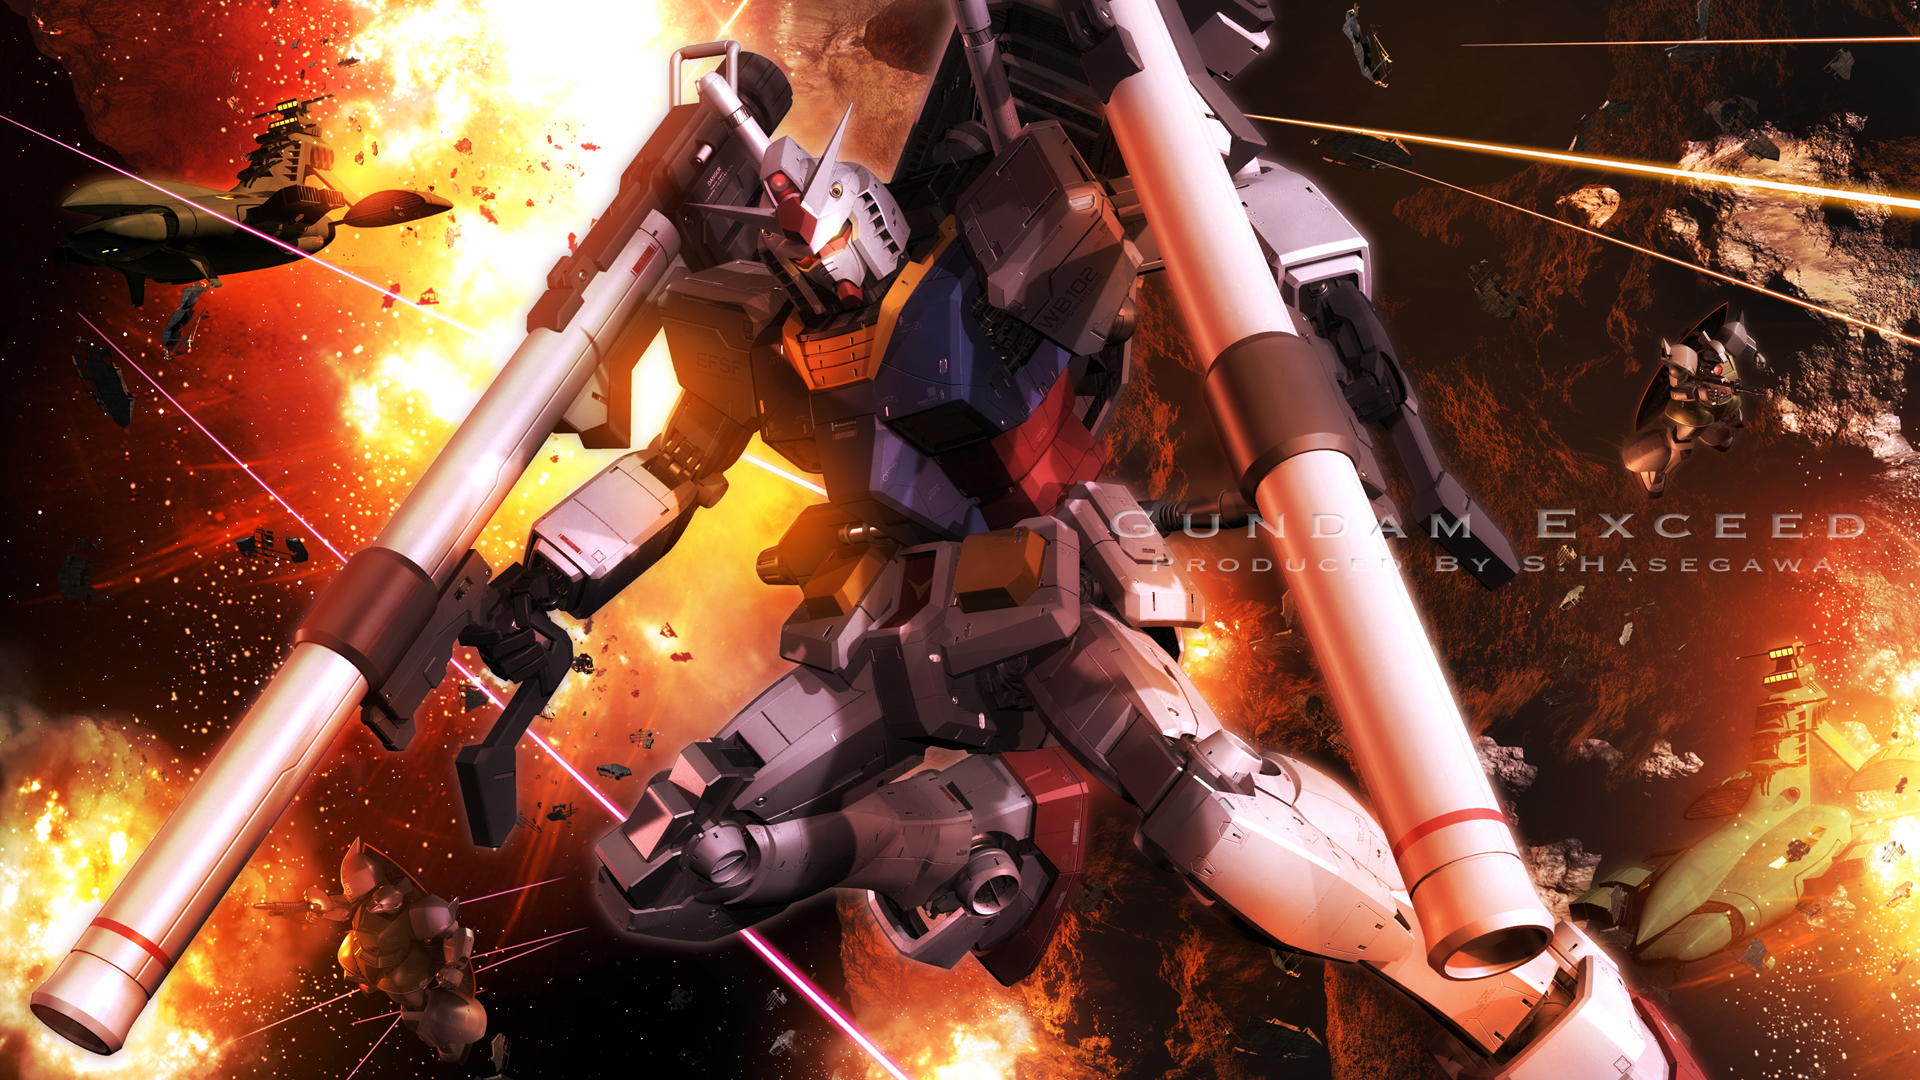 Anime Mech Mobile Suit Gundam Gundam Super Robot Wars RX 78 Gundam Artwork Digital Art Fan Art 1920x1080